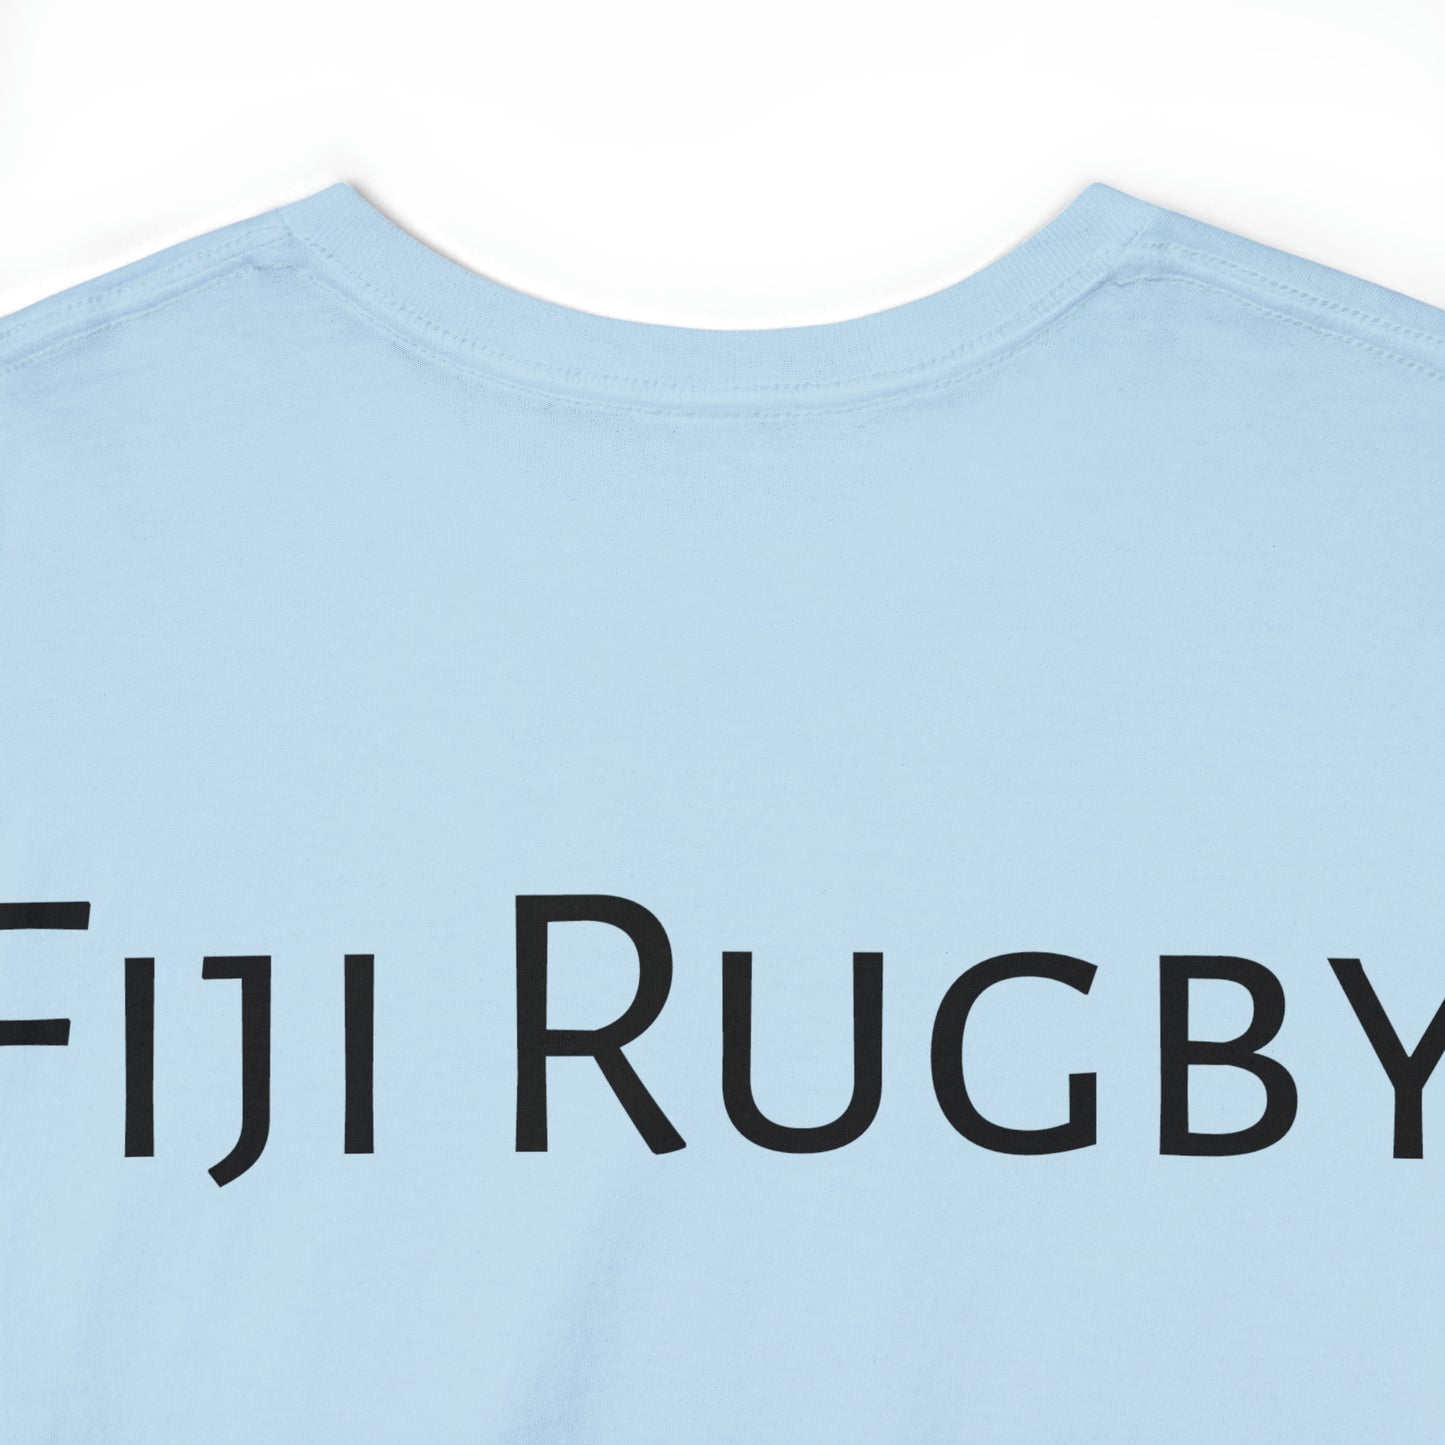 Happy Fiji - light shirts